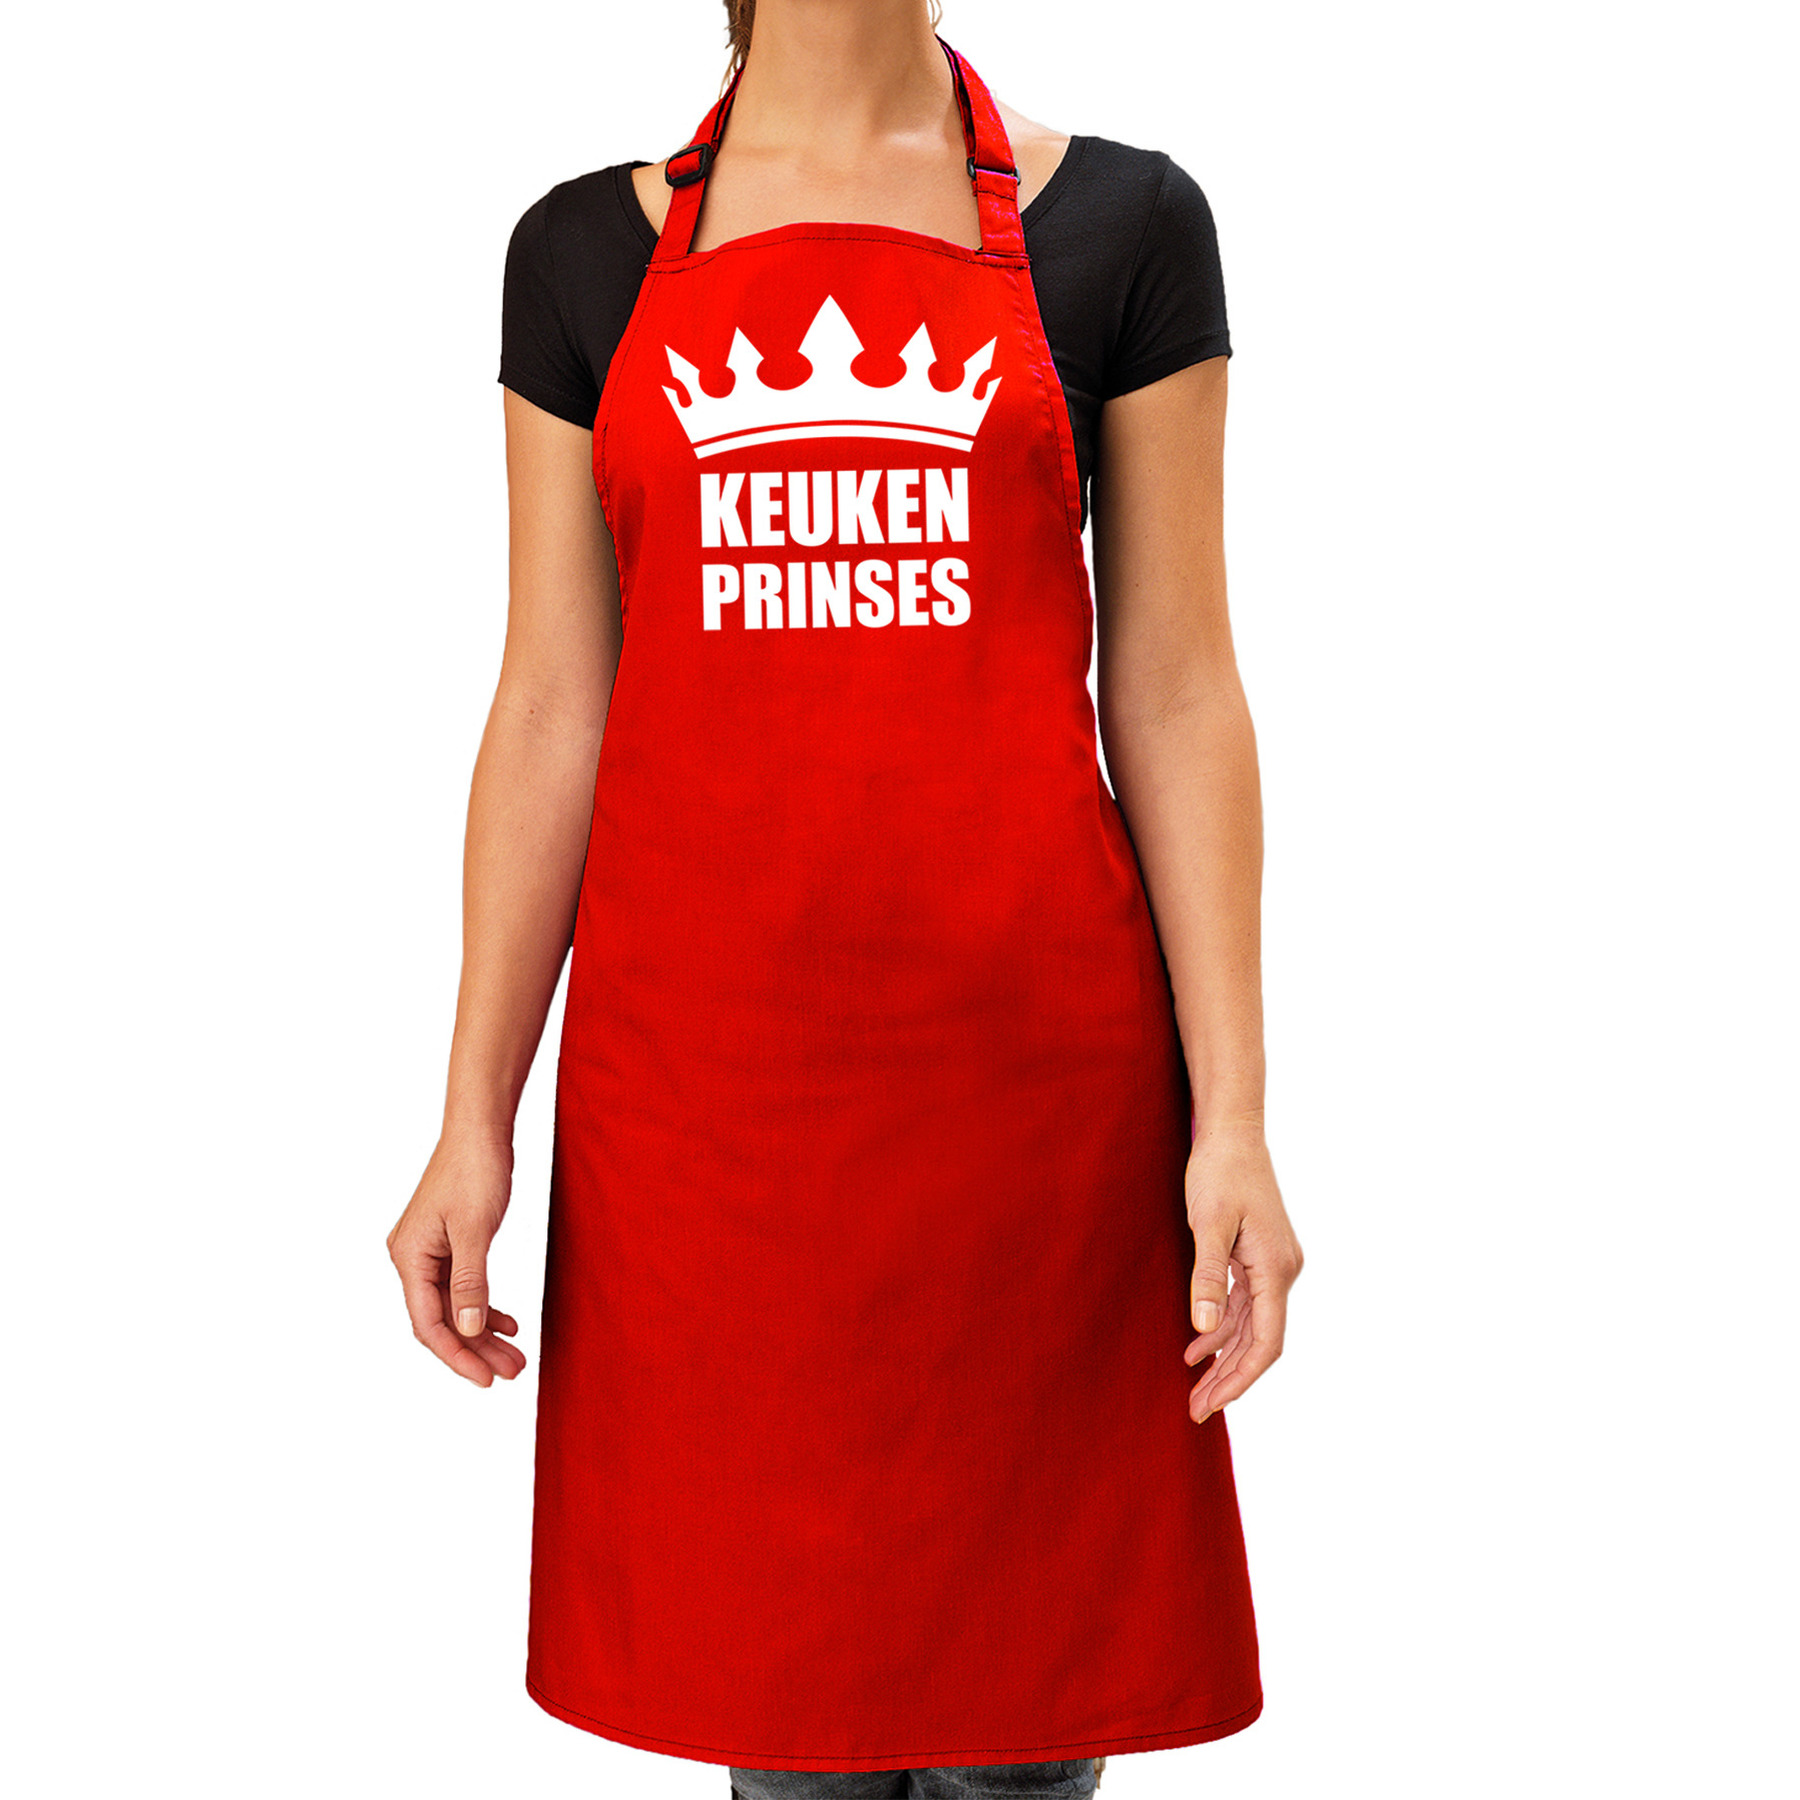 Keuken Prinses barbeque schort-keukenschort rood dames